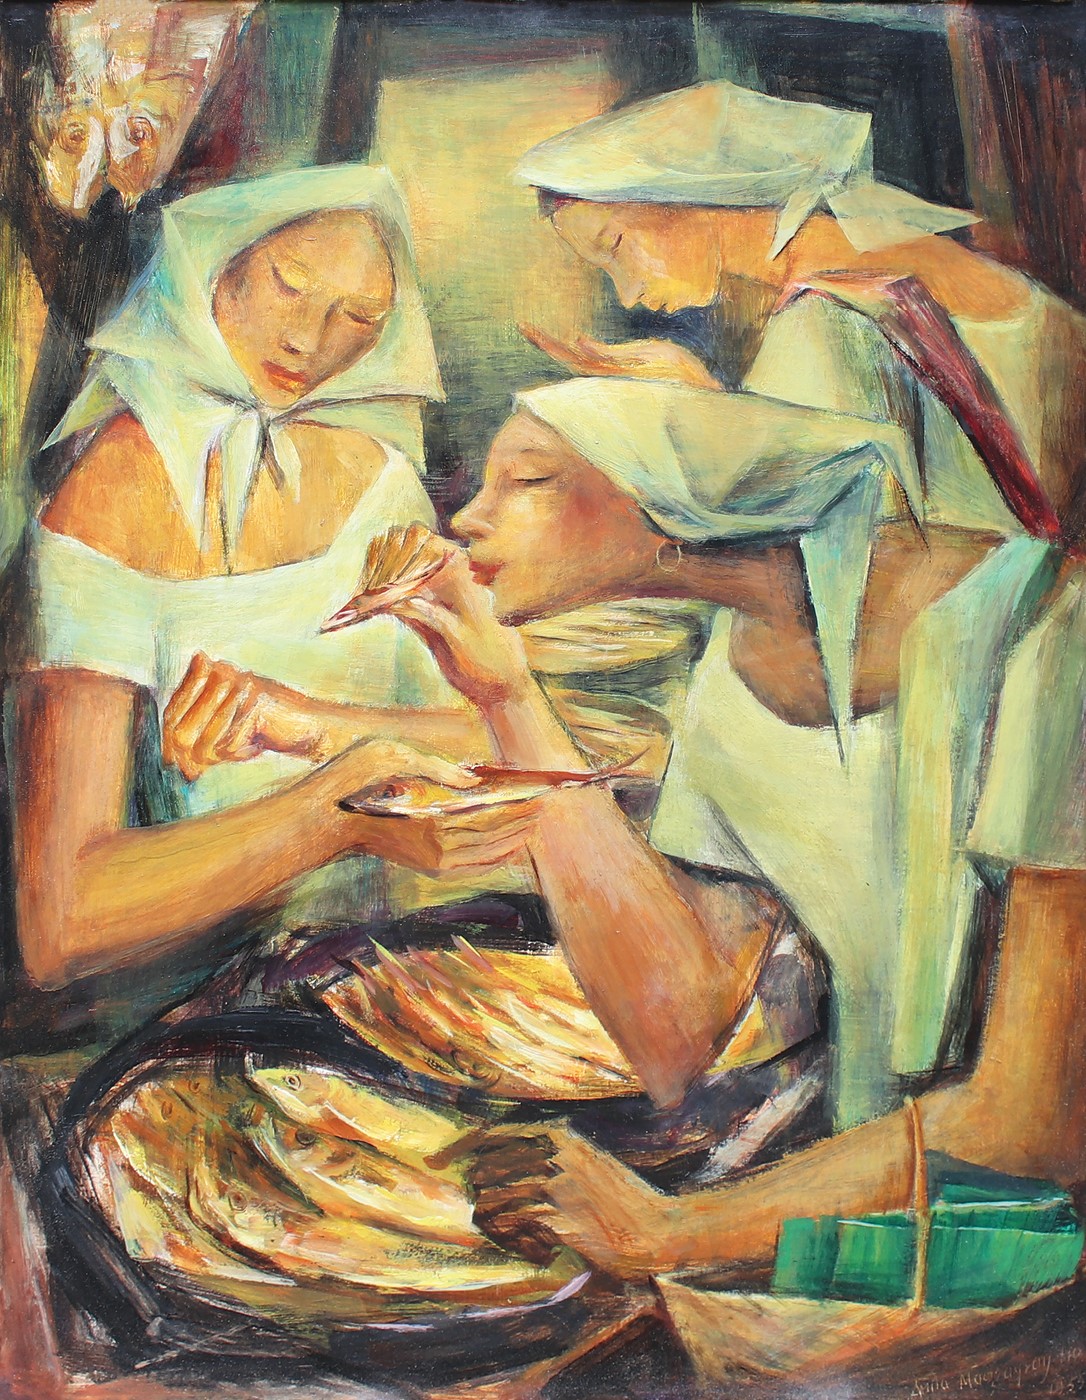 "Tinapa Vendors" by Anita Magsaysay-Ho